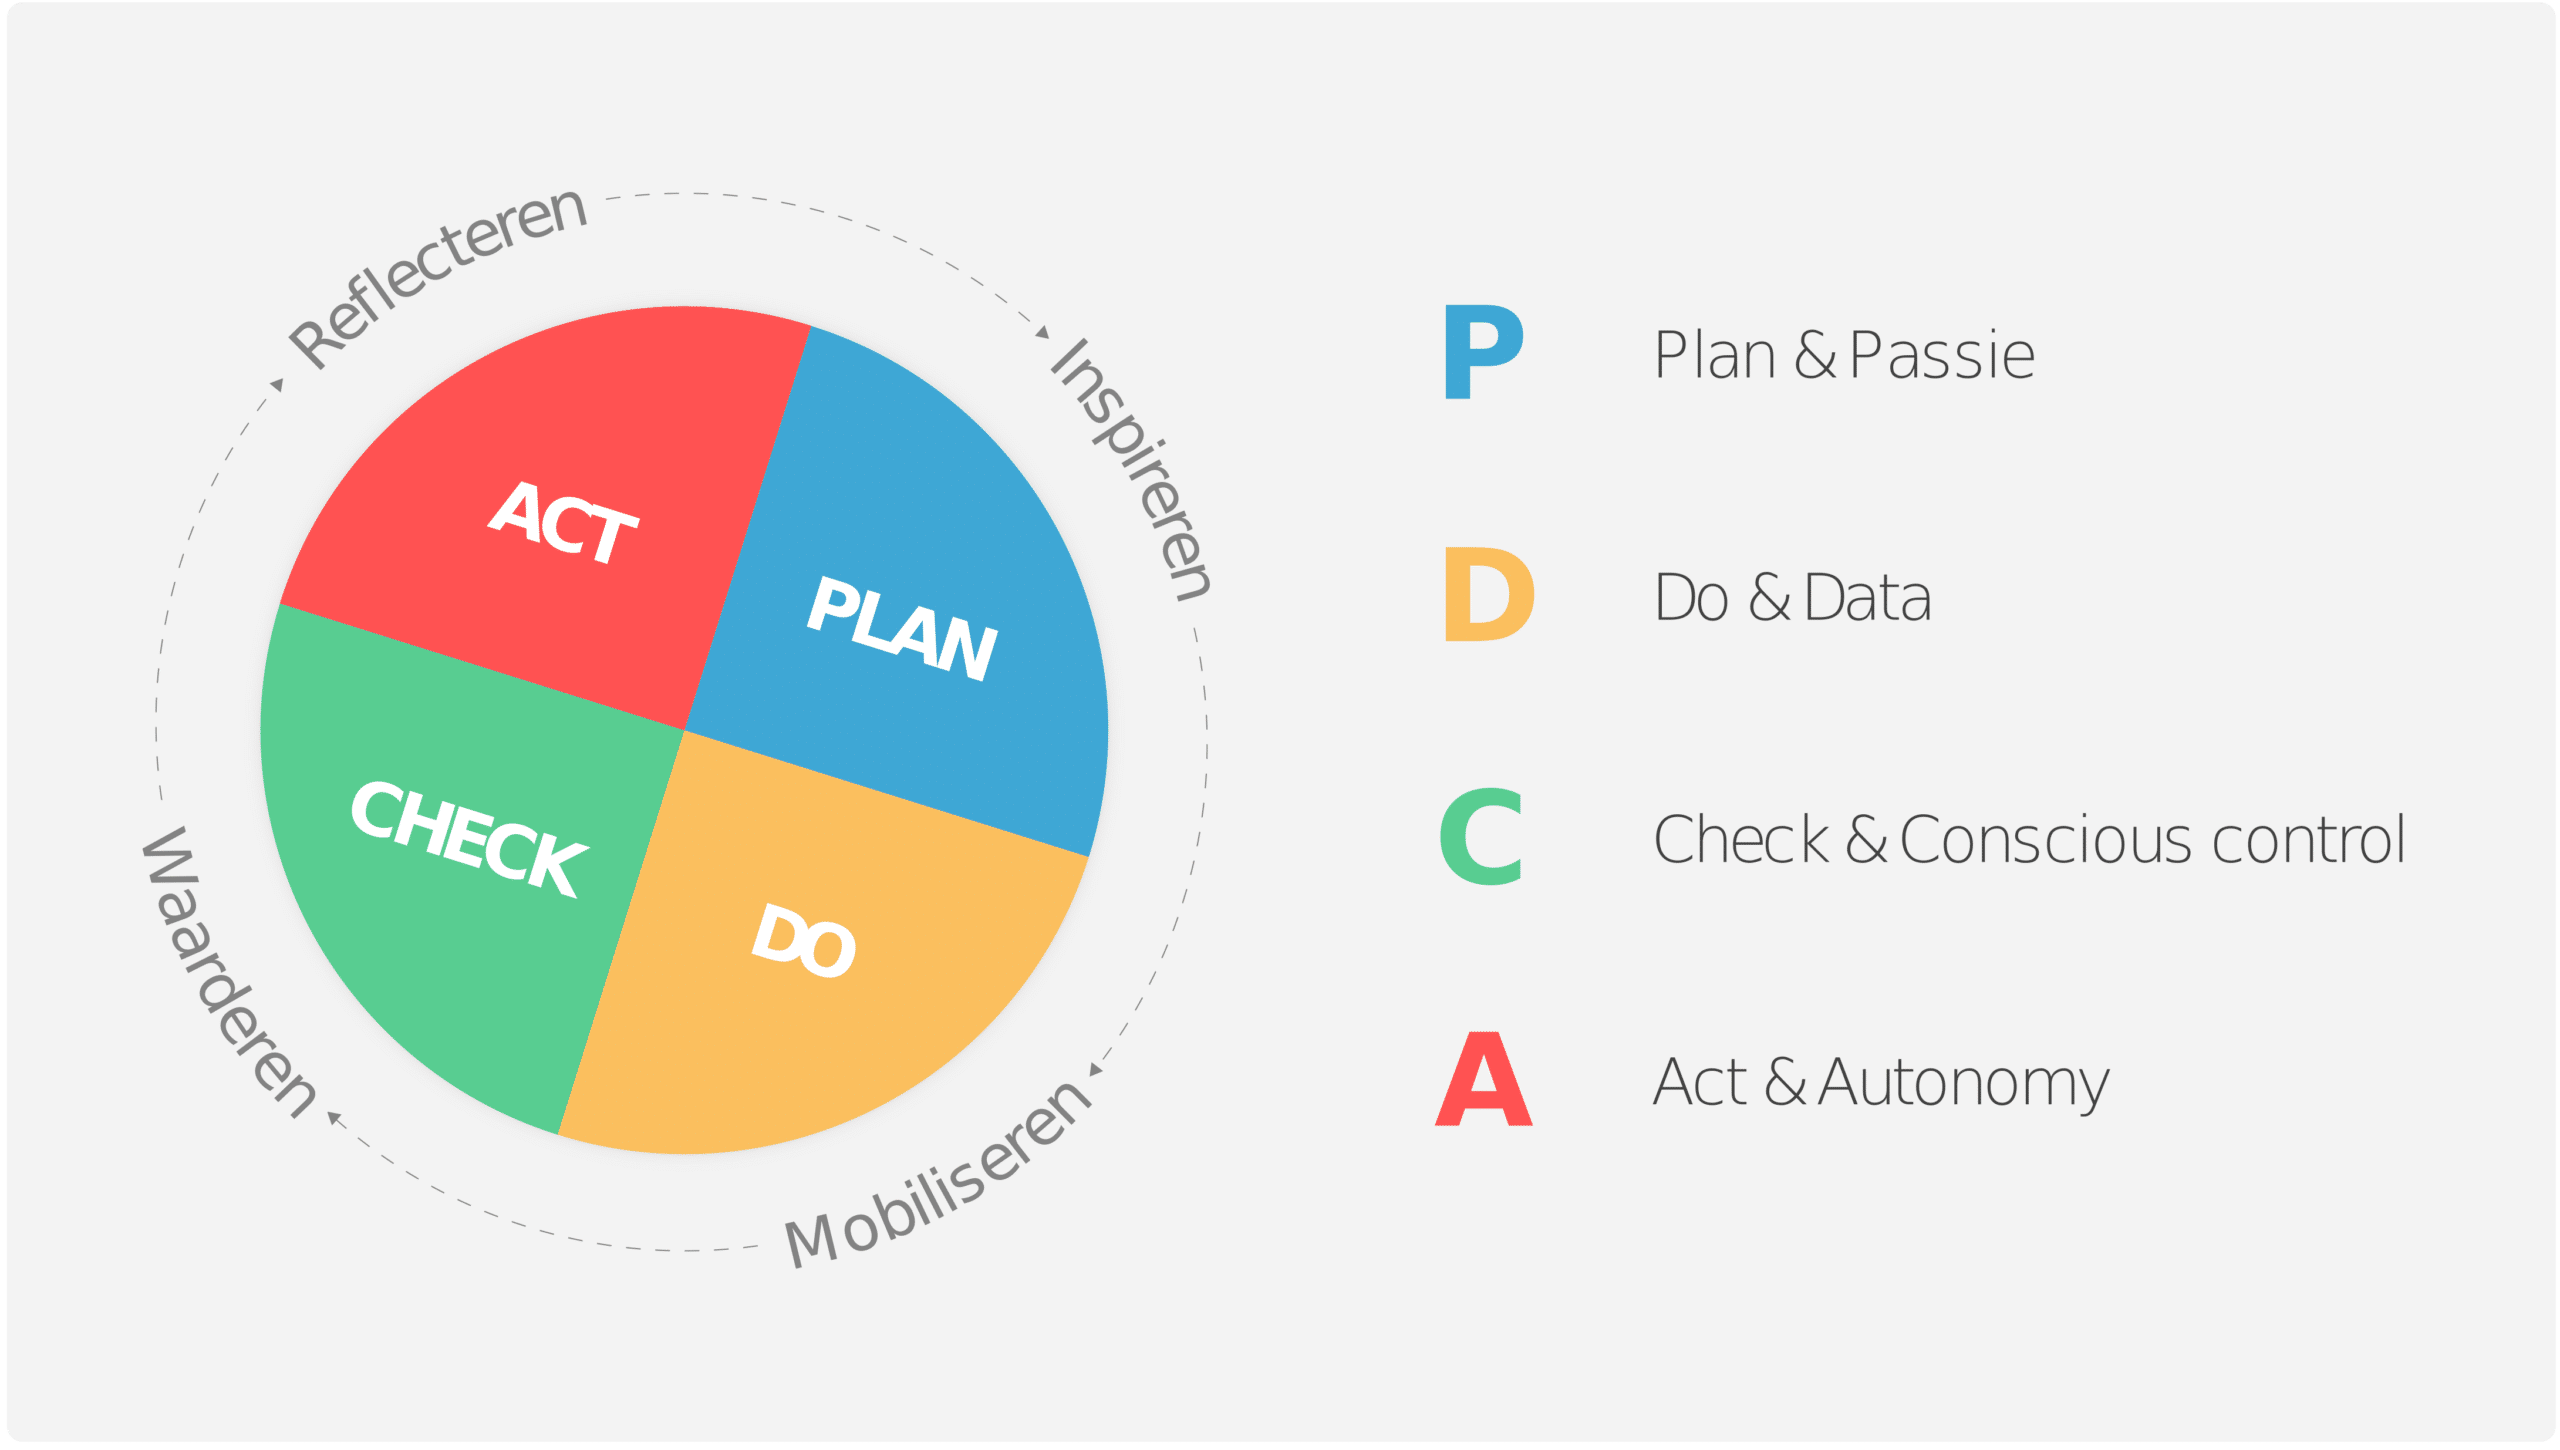 datacratische pdca-cyclus uitgelegd